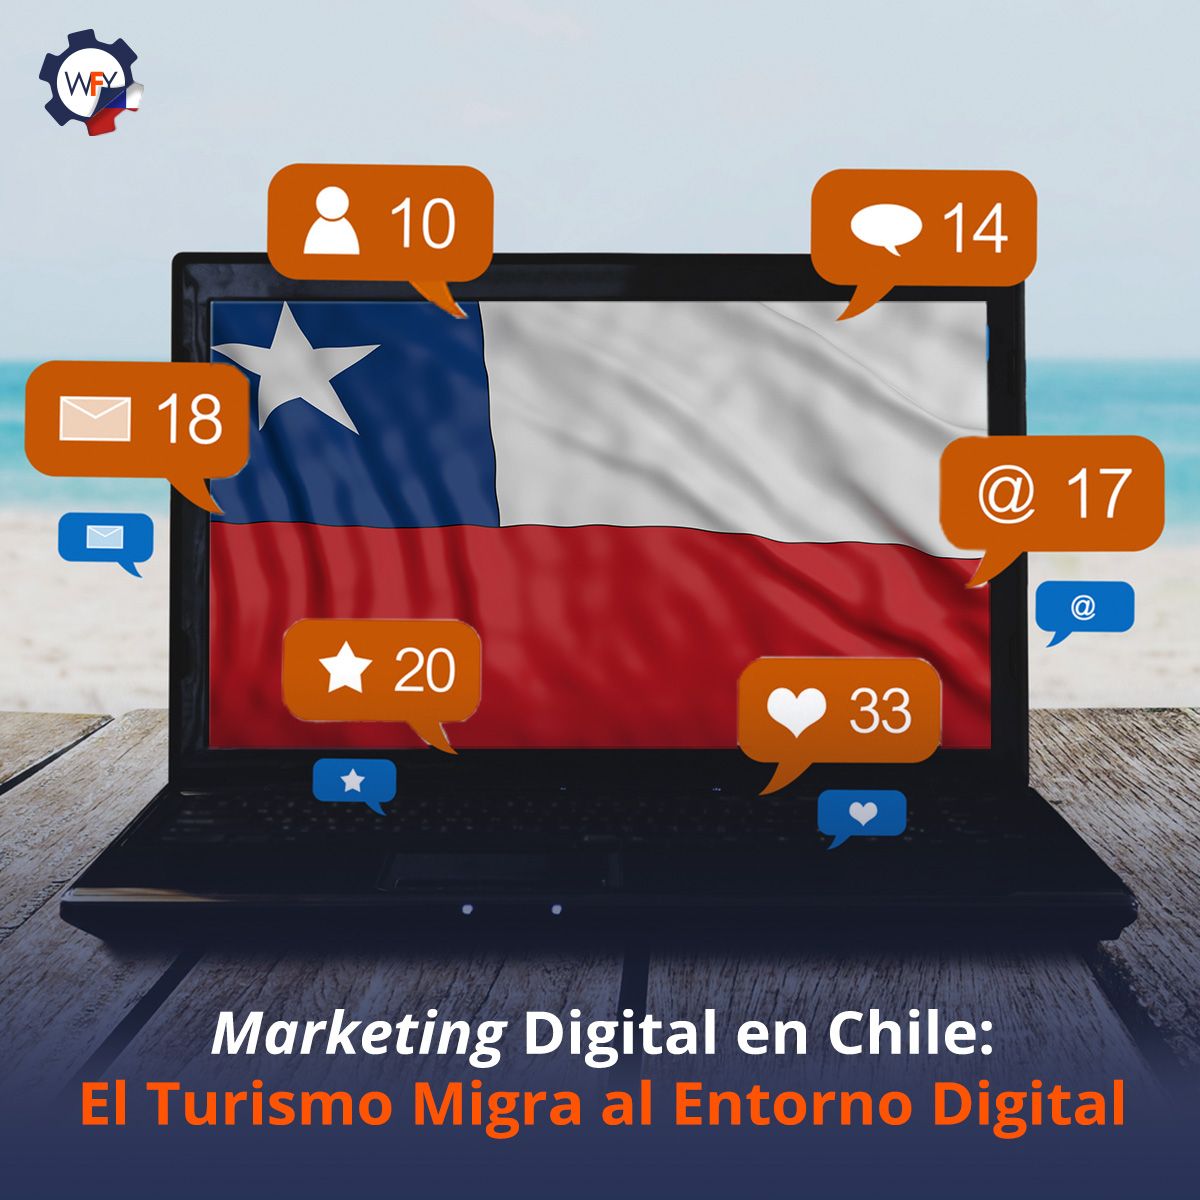 Marketing Digital en Chile: El Turismo Migra al Entorno Digital